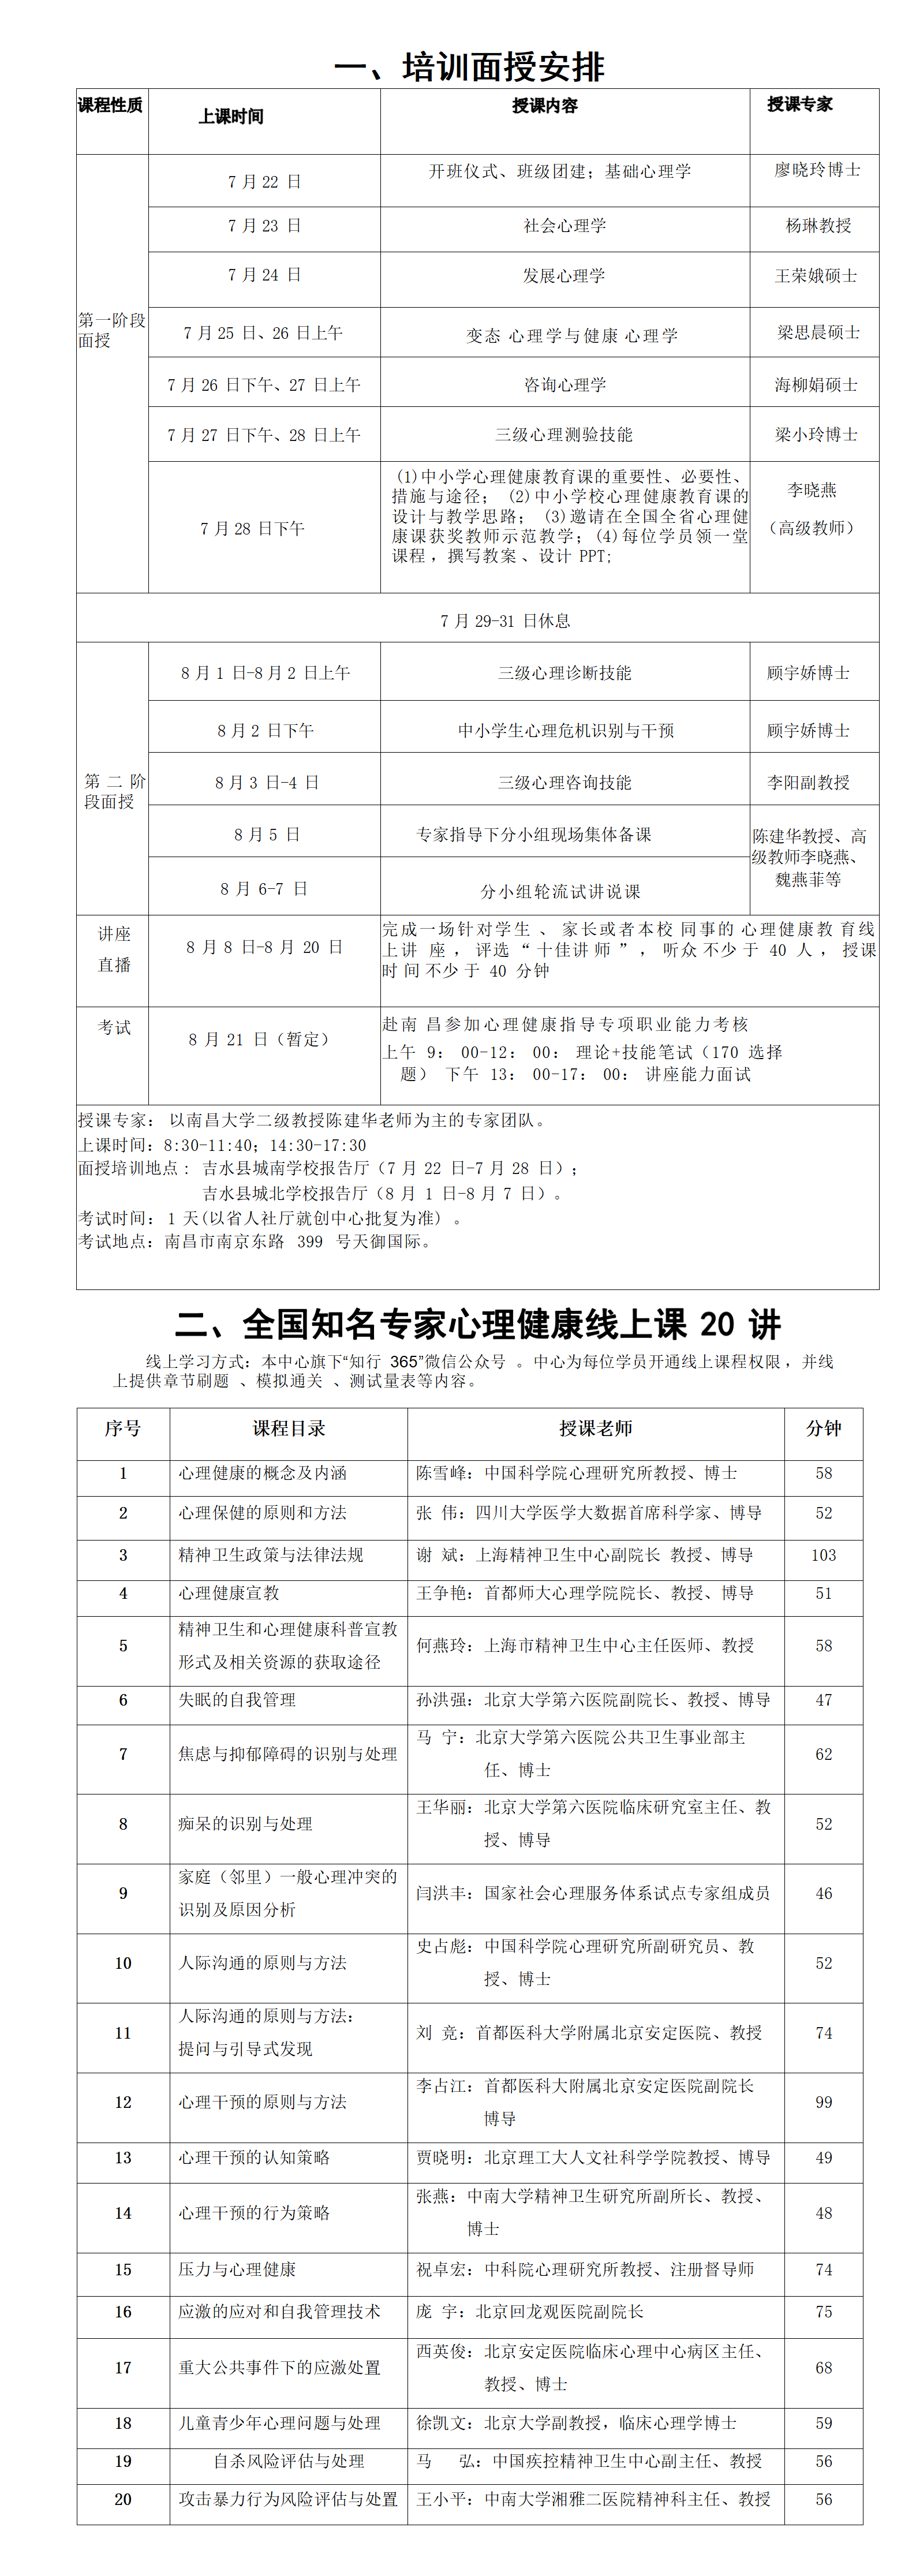 1_3_吉水县培训指南（7.19定稿）(1)(2)_01(1).png